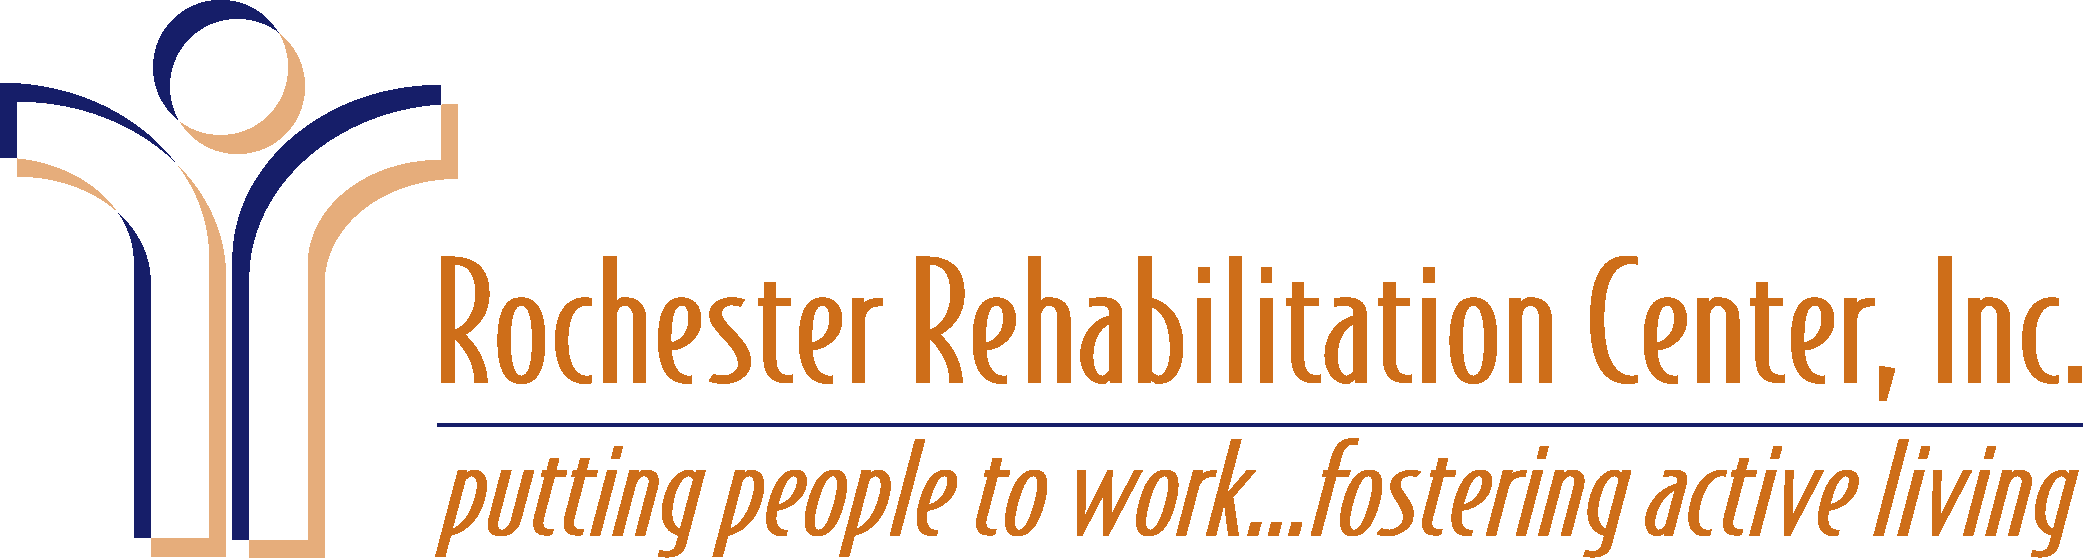 Rochester Rehabilitation Center Logo Vector